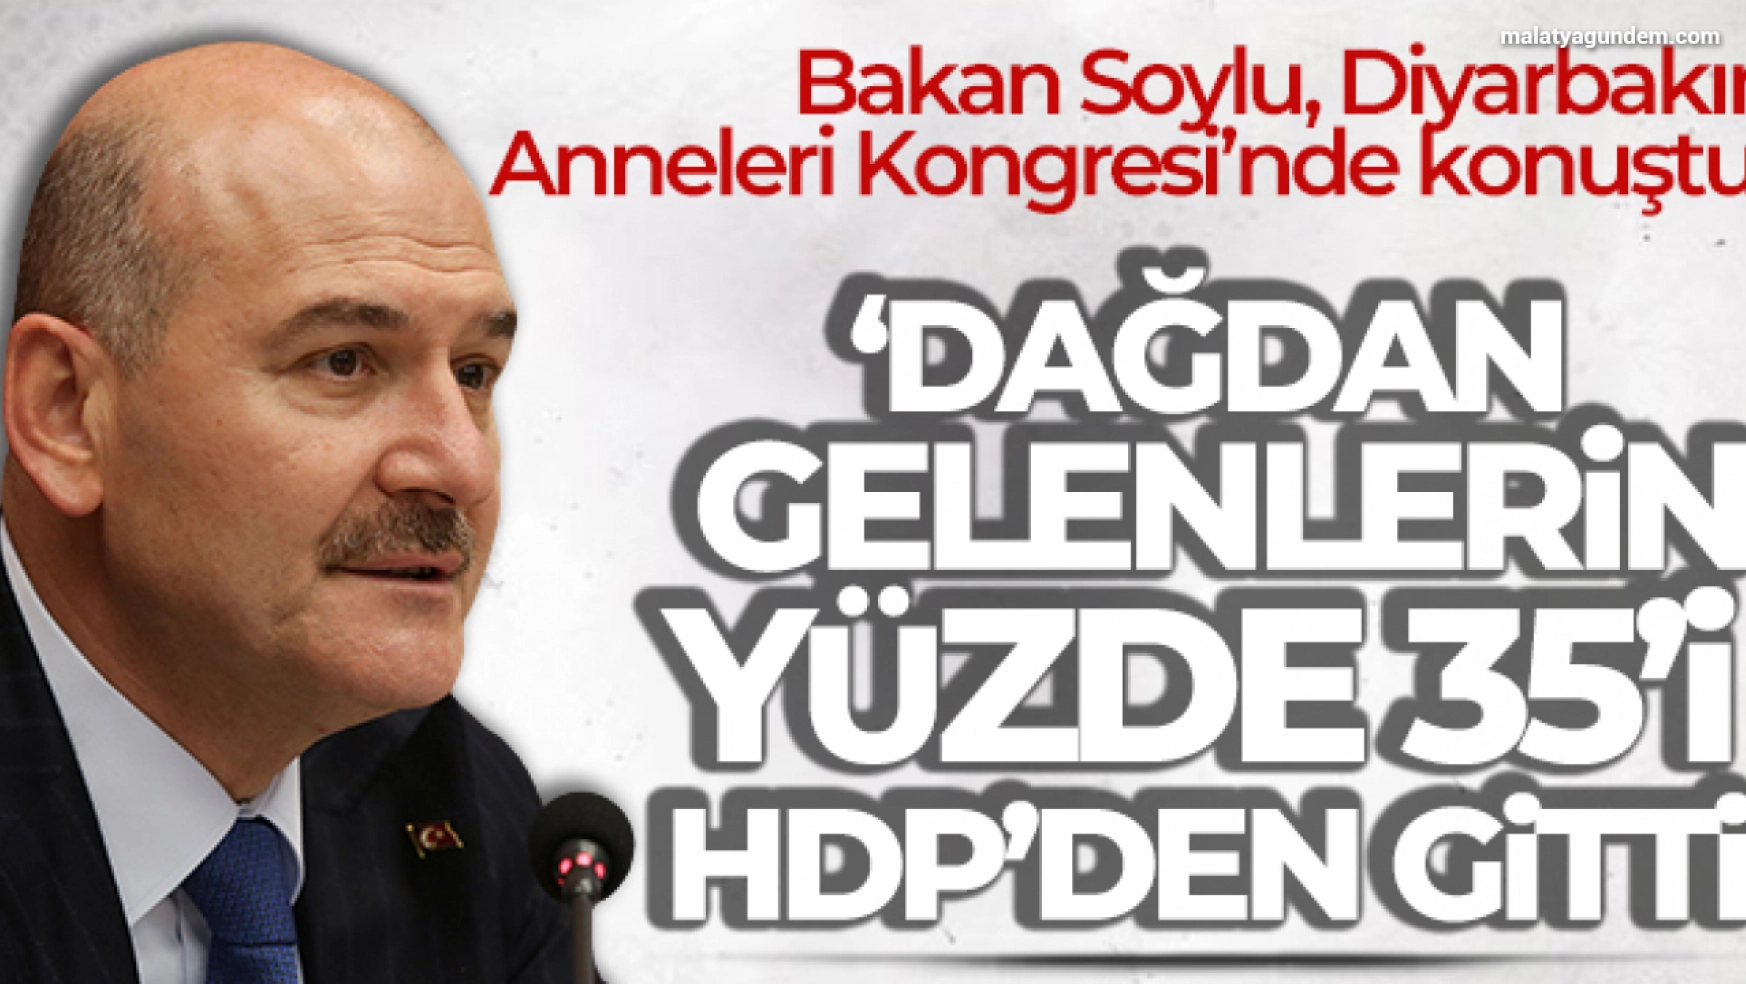 Bakan Soylu: 'Dağdan gelenlerin yüzde 35'i HDP'den gitti'